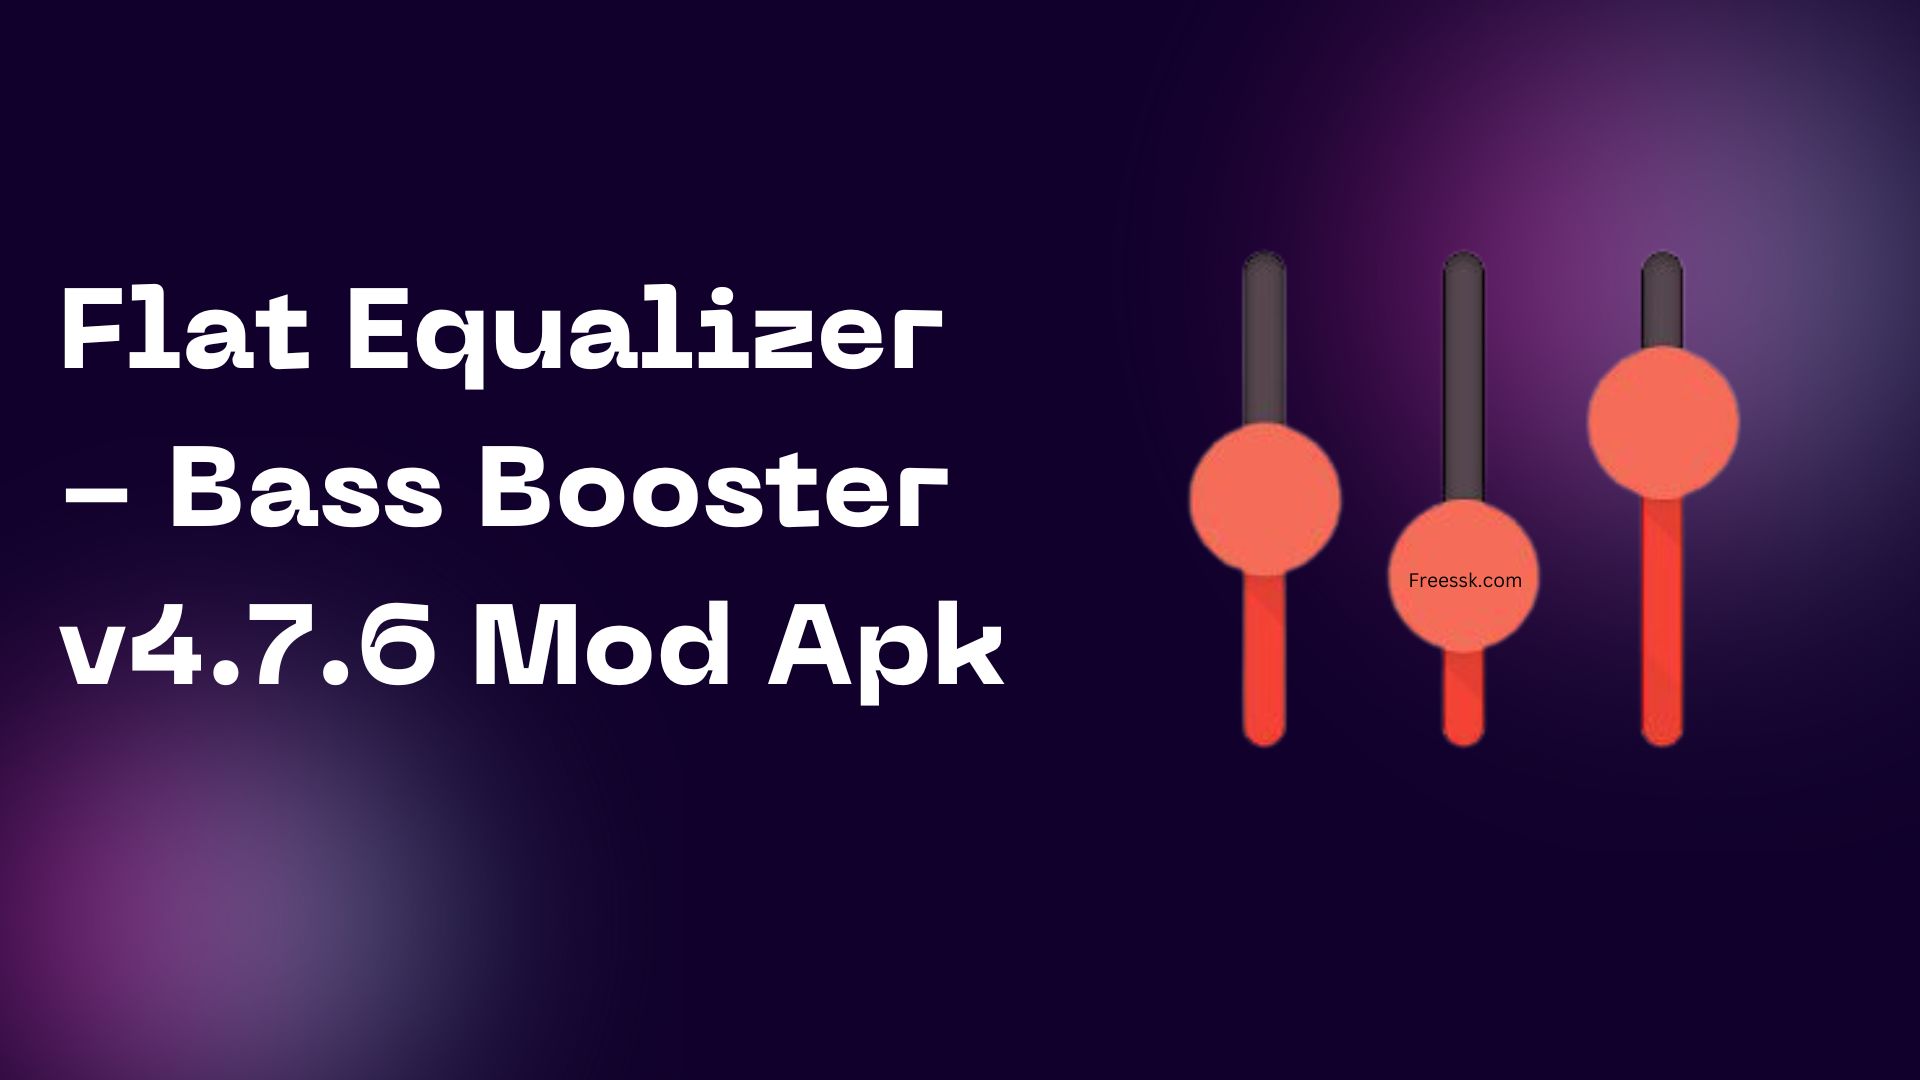 Flat Equalizer - Bass Booster v4.7.6 Mod Apk Download For Free